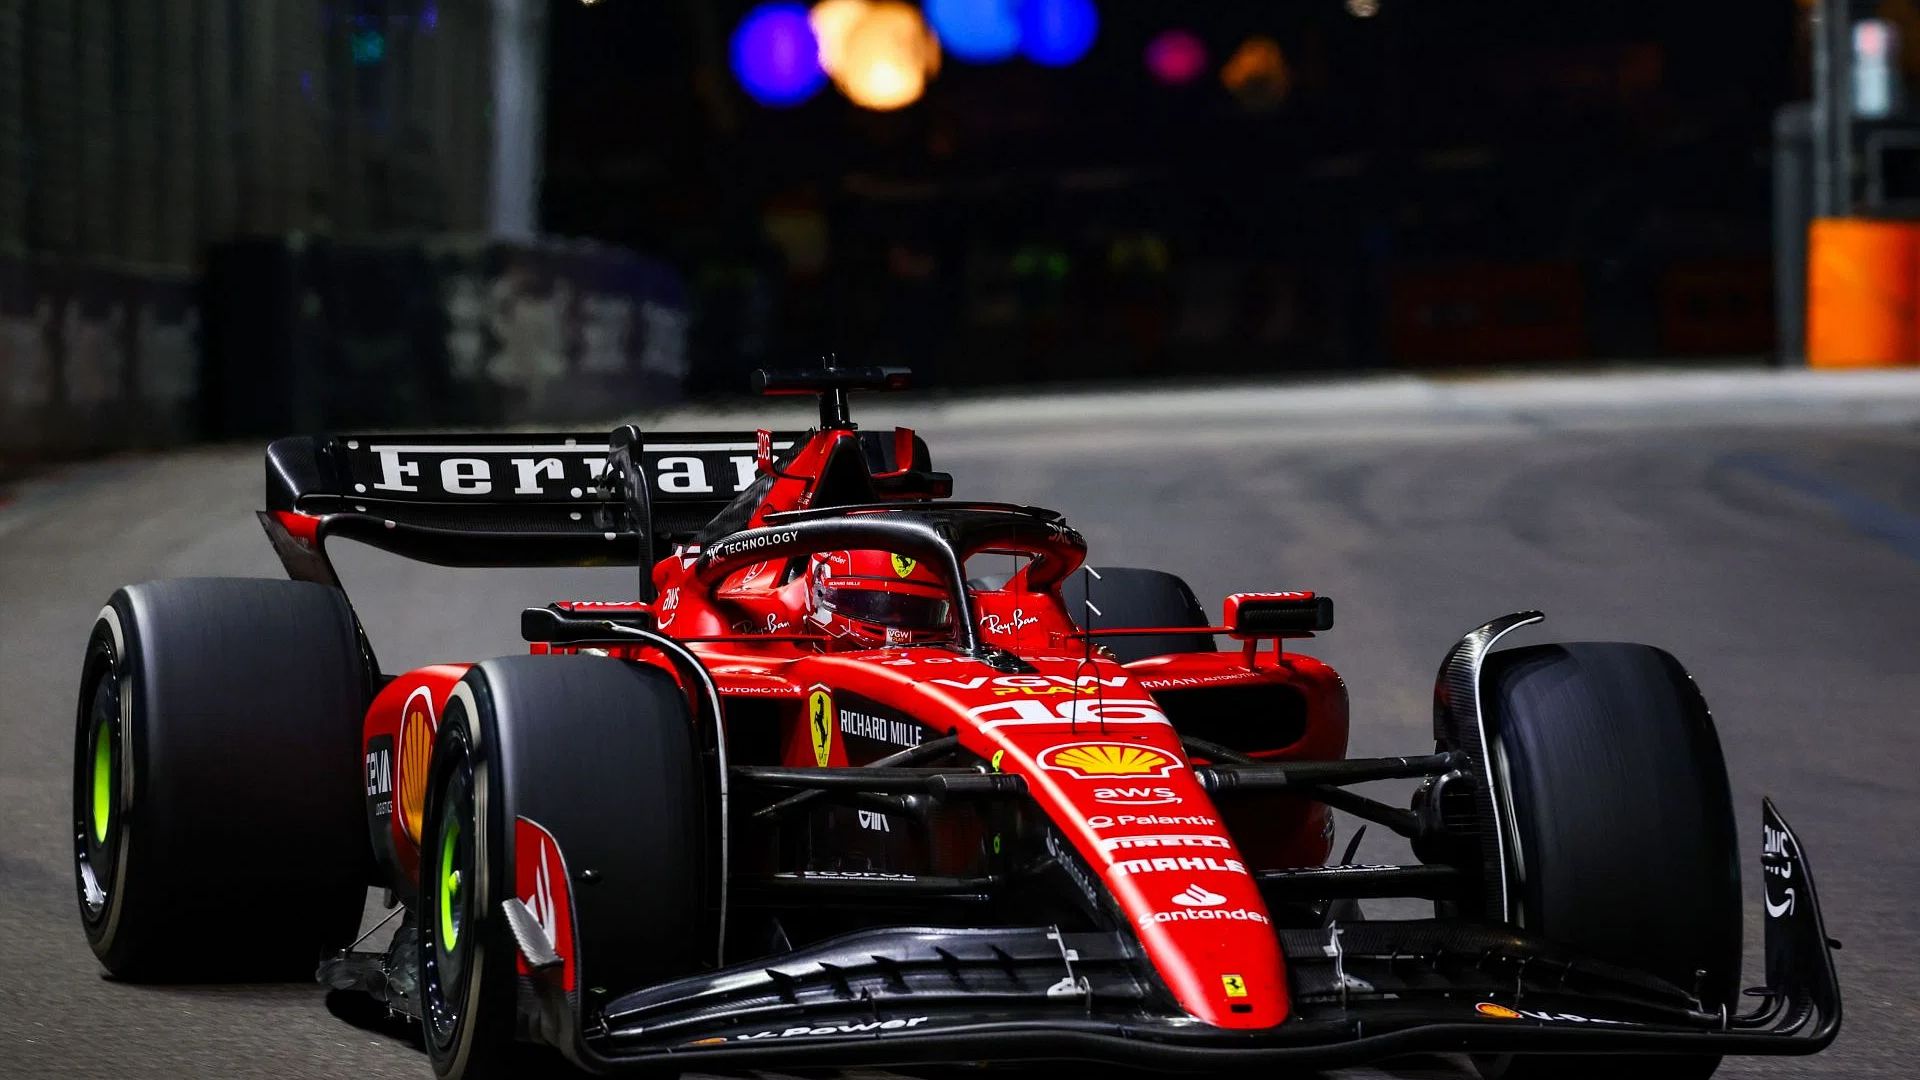 «Ferrari» не выиграли бы эту гонку в первой половине сезона», - аналитик Формулы-1 о значительном прогрессе, достигнутом командой Шарля Леклера в 2023 году.